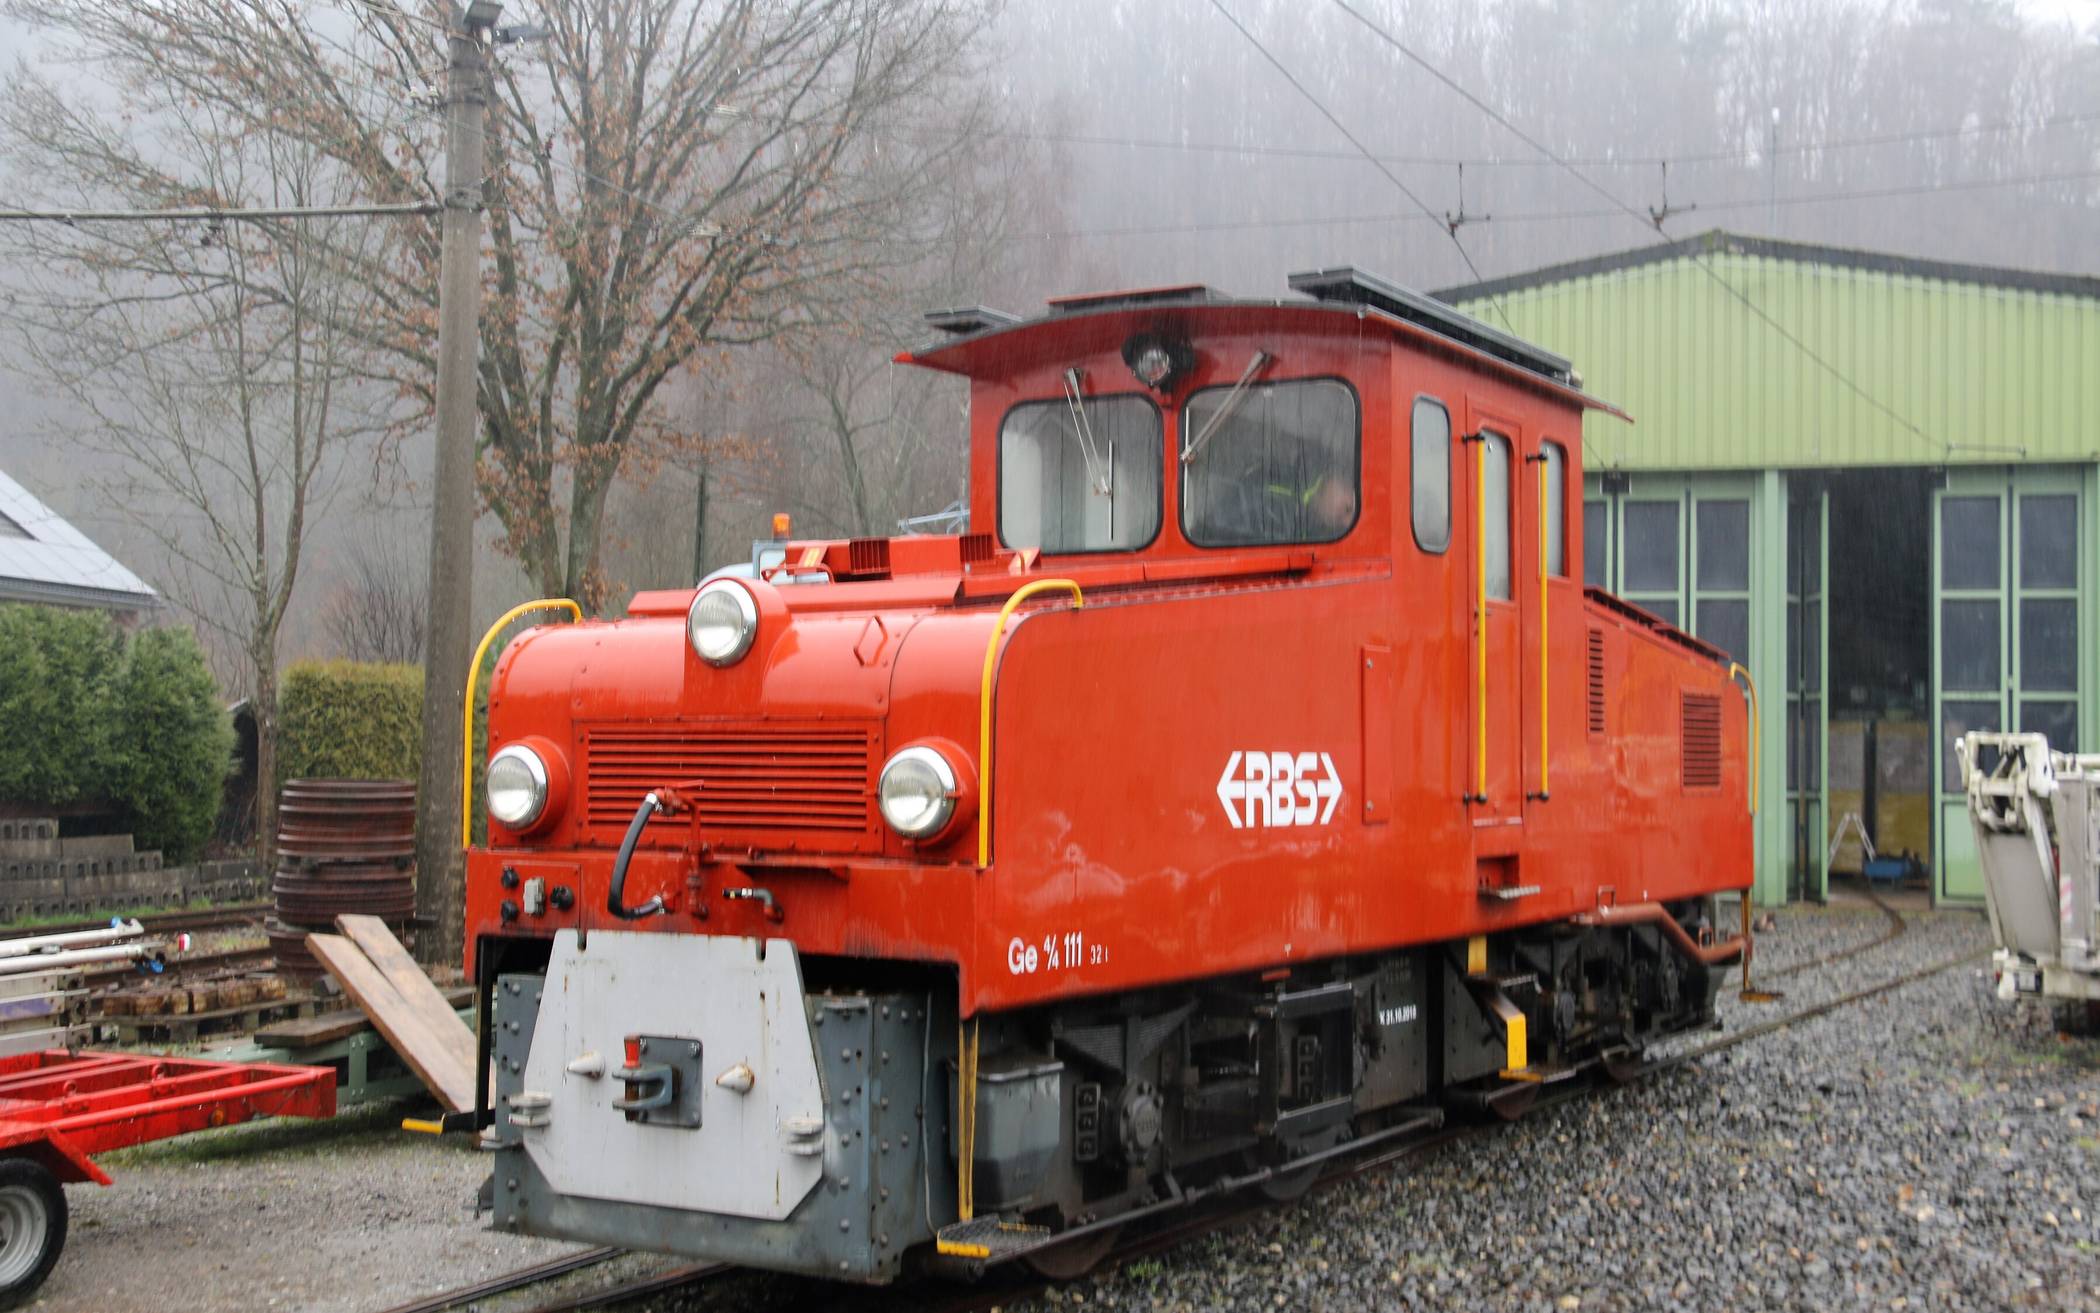  Noch im Farbkleid der Vereinten Bern-Worb-Bahnen traf die Lok auf dem Museumsgelände ein. 